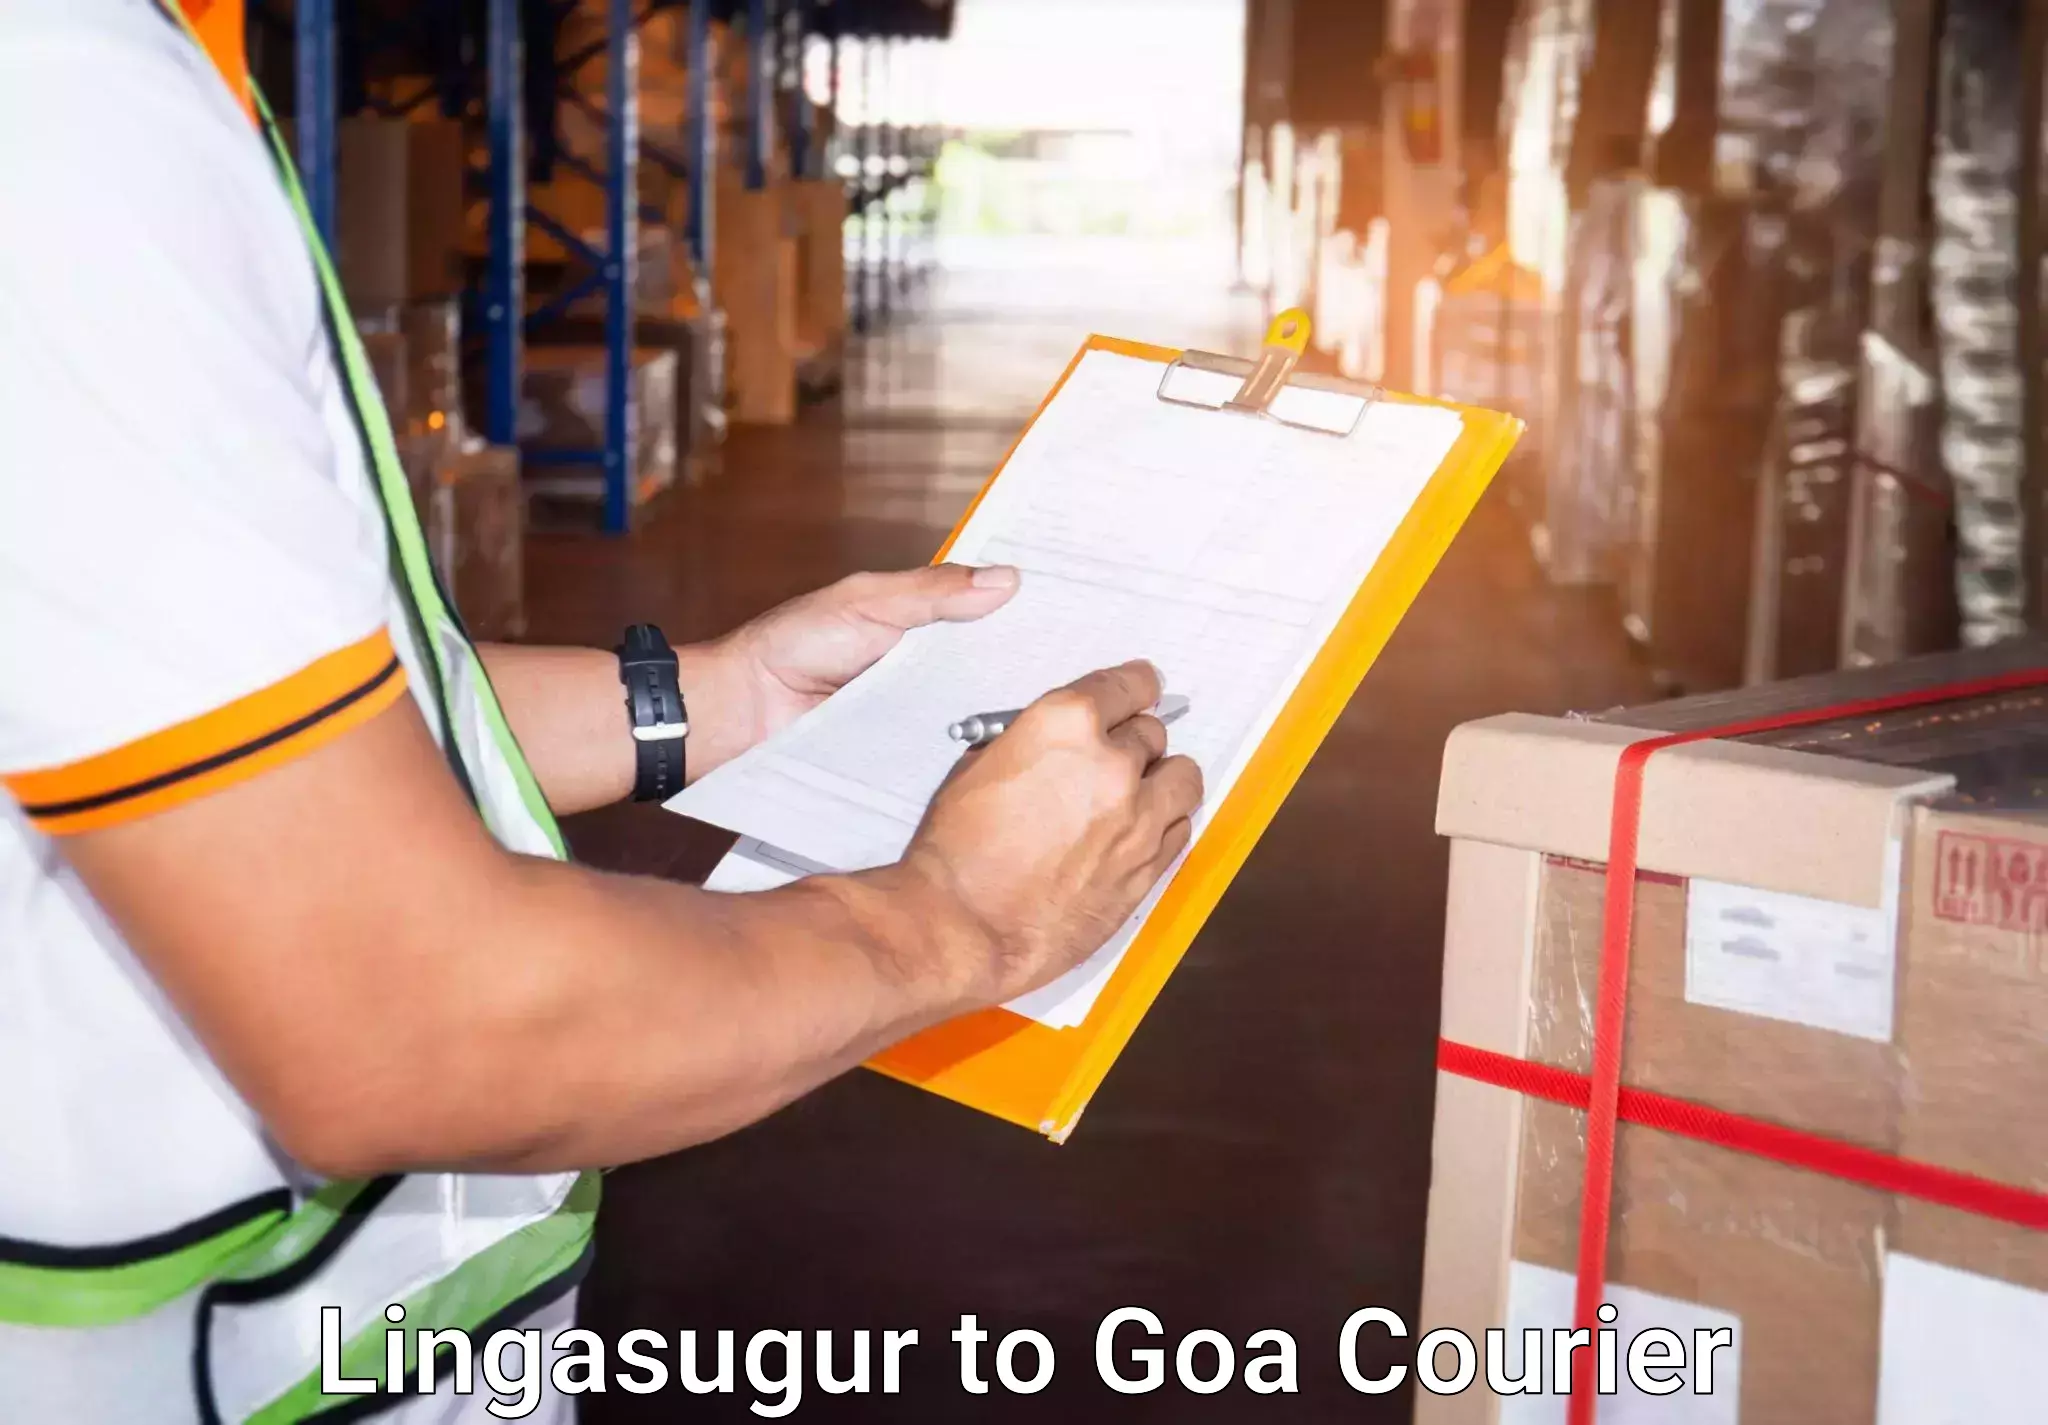 Luggage transport company in Lingasugur to Goa University